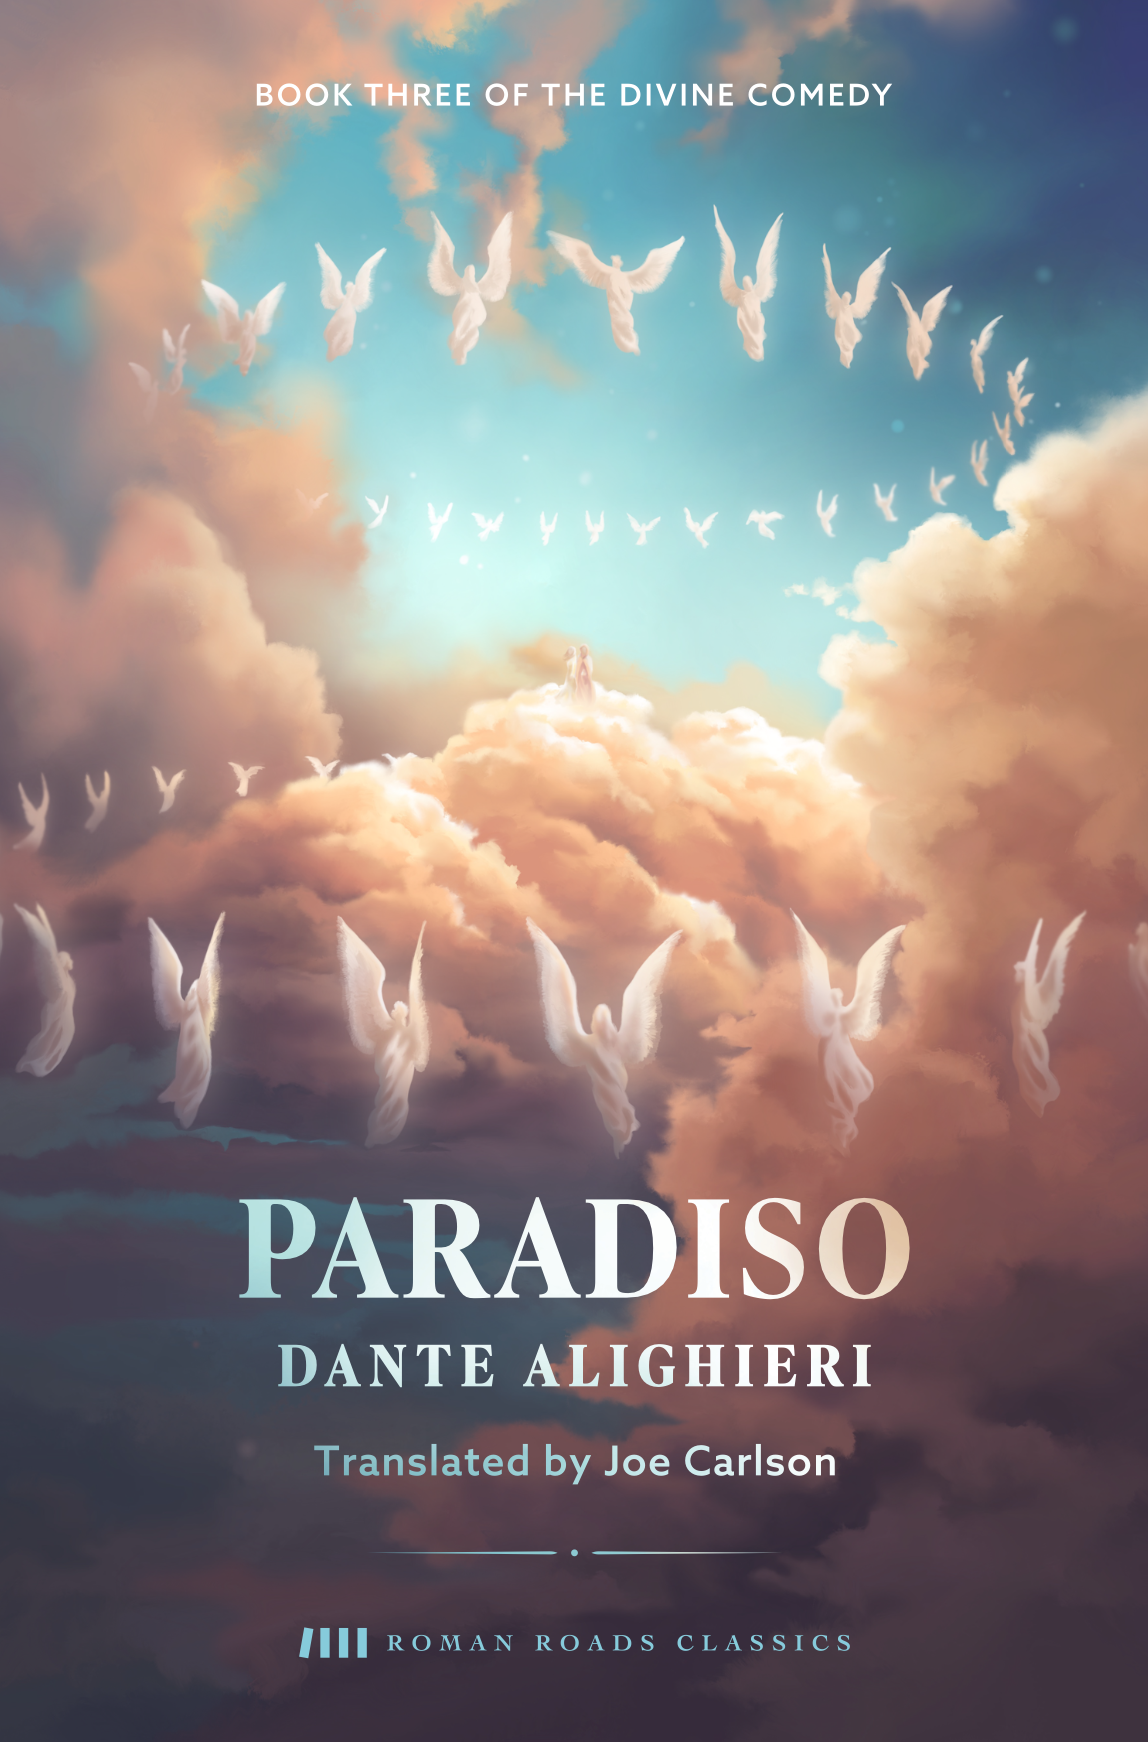 Paradiso (Dante - Carlson translation)